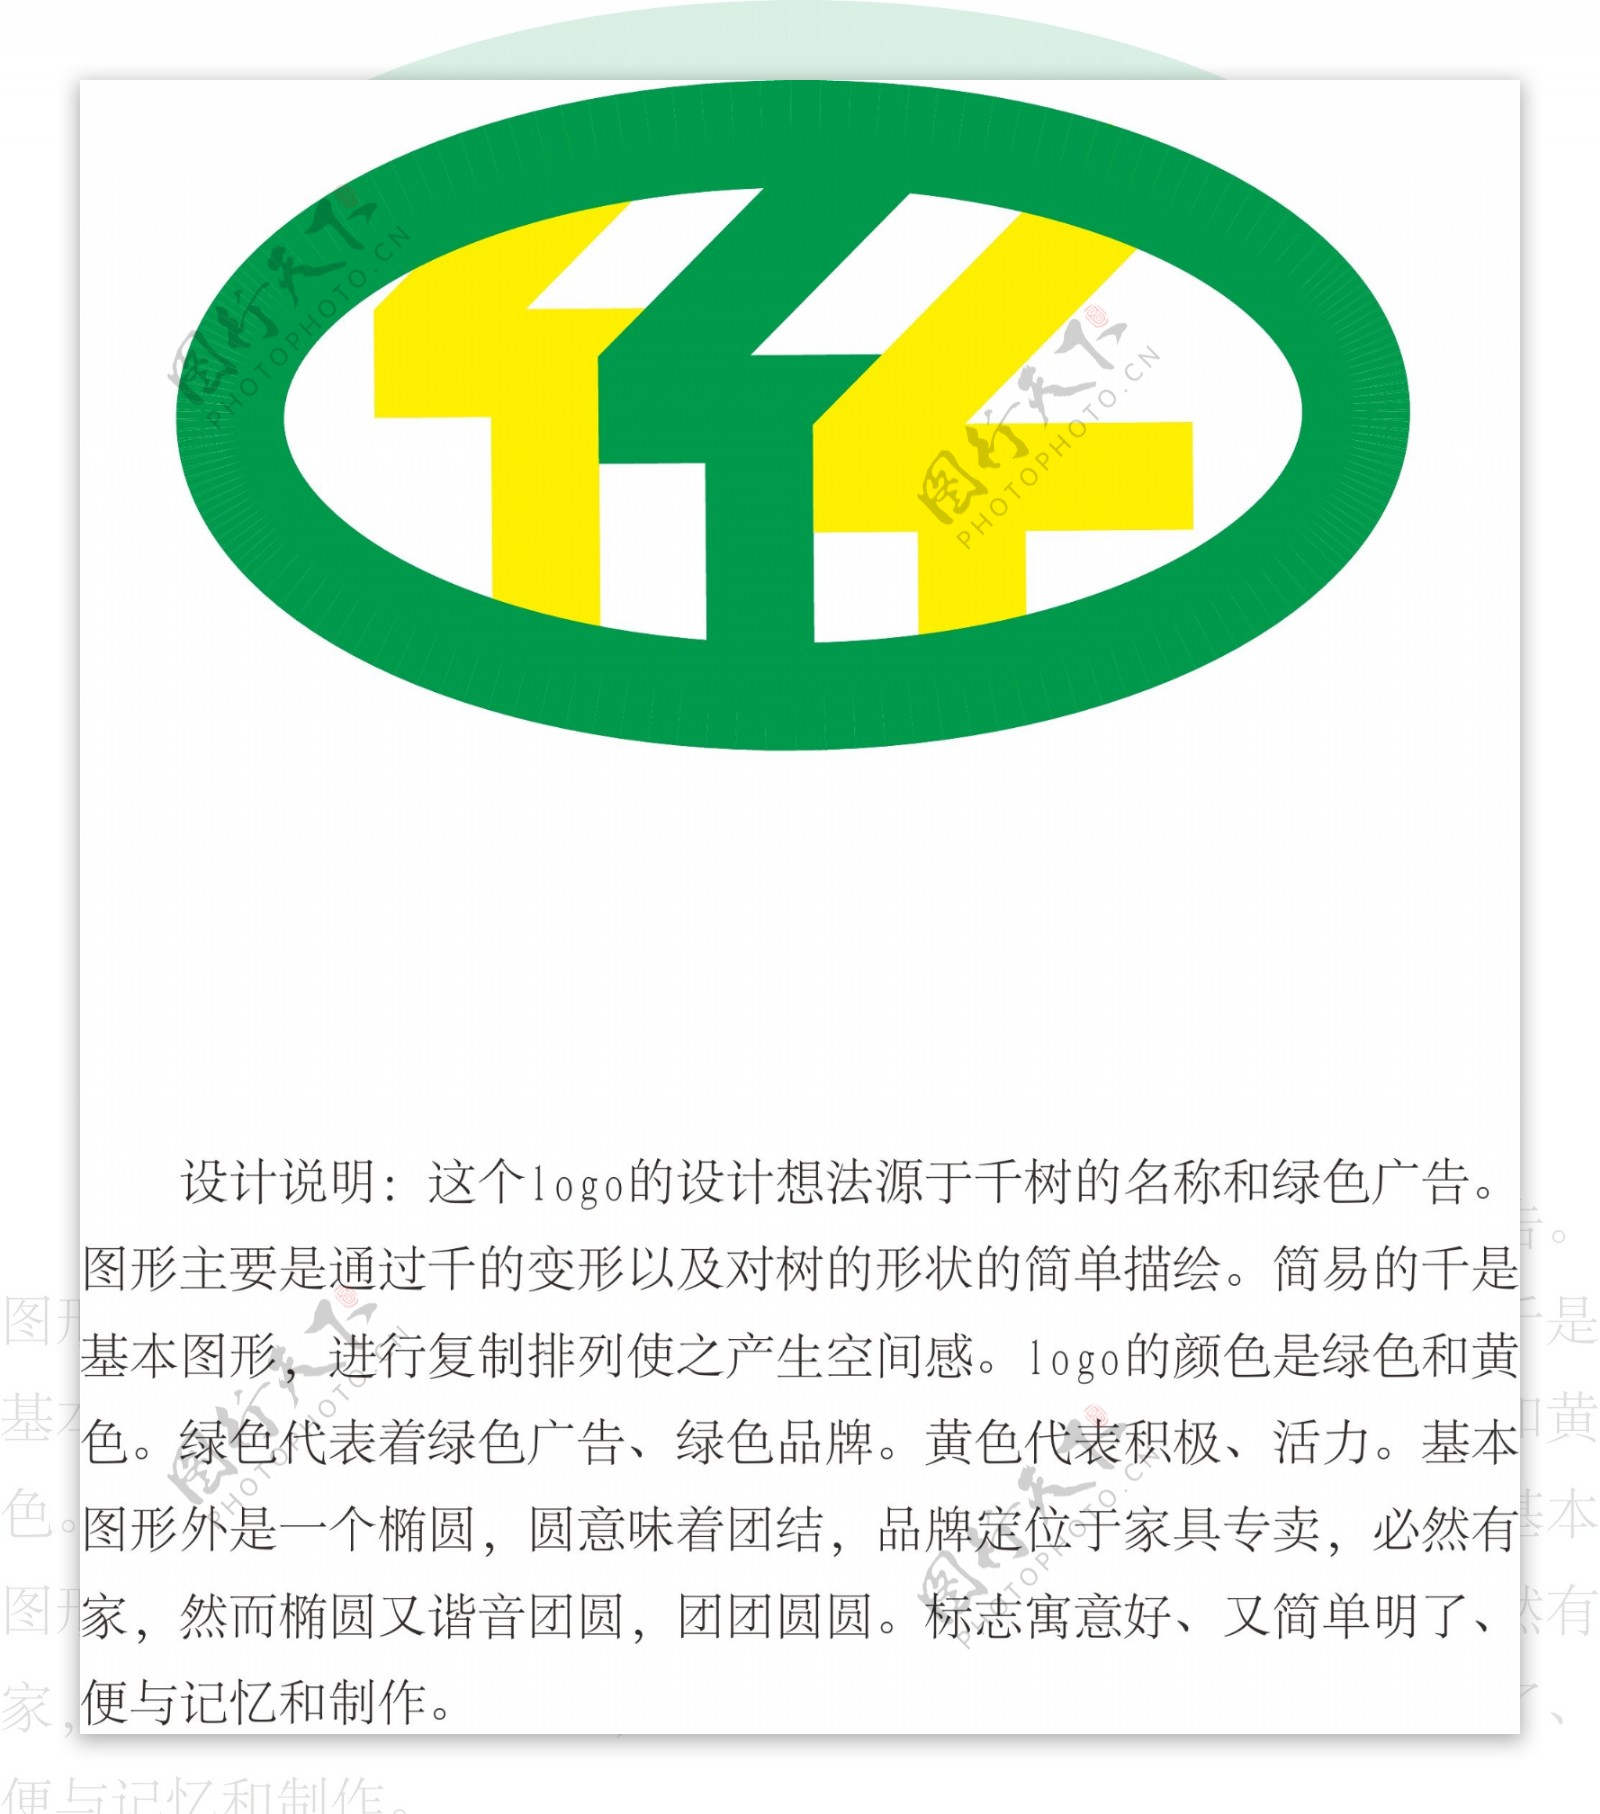 千树logo图片